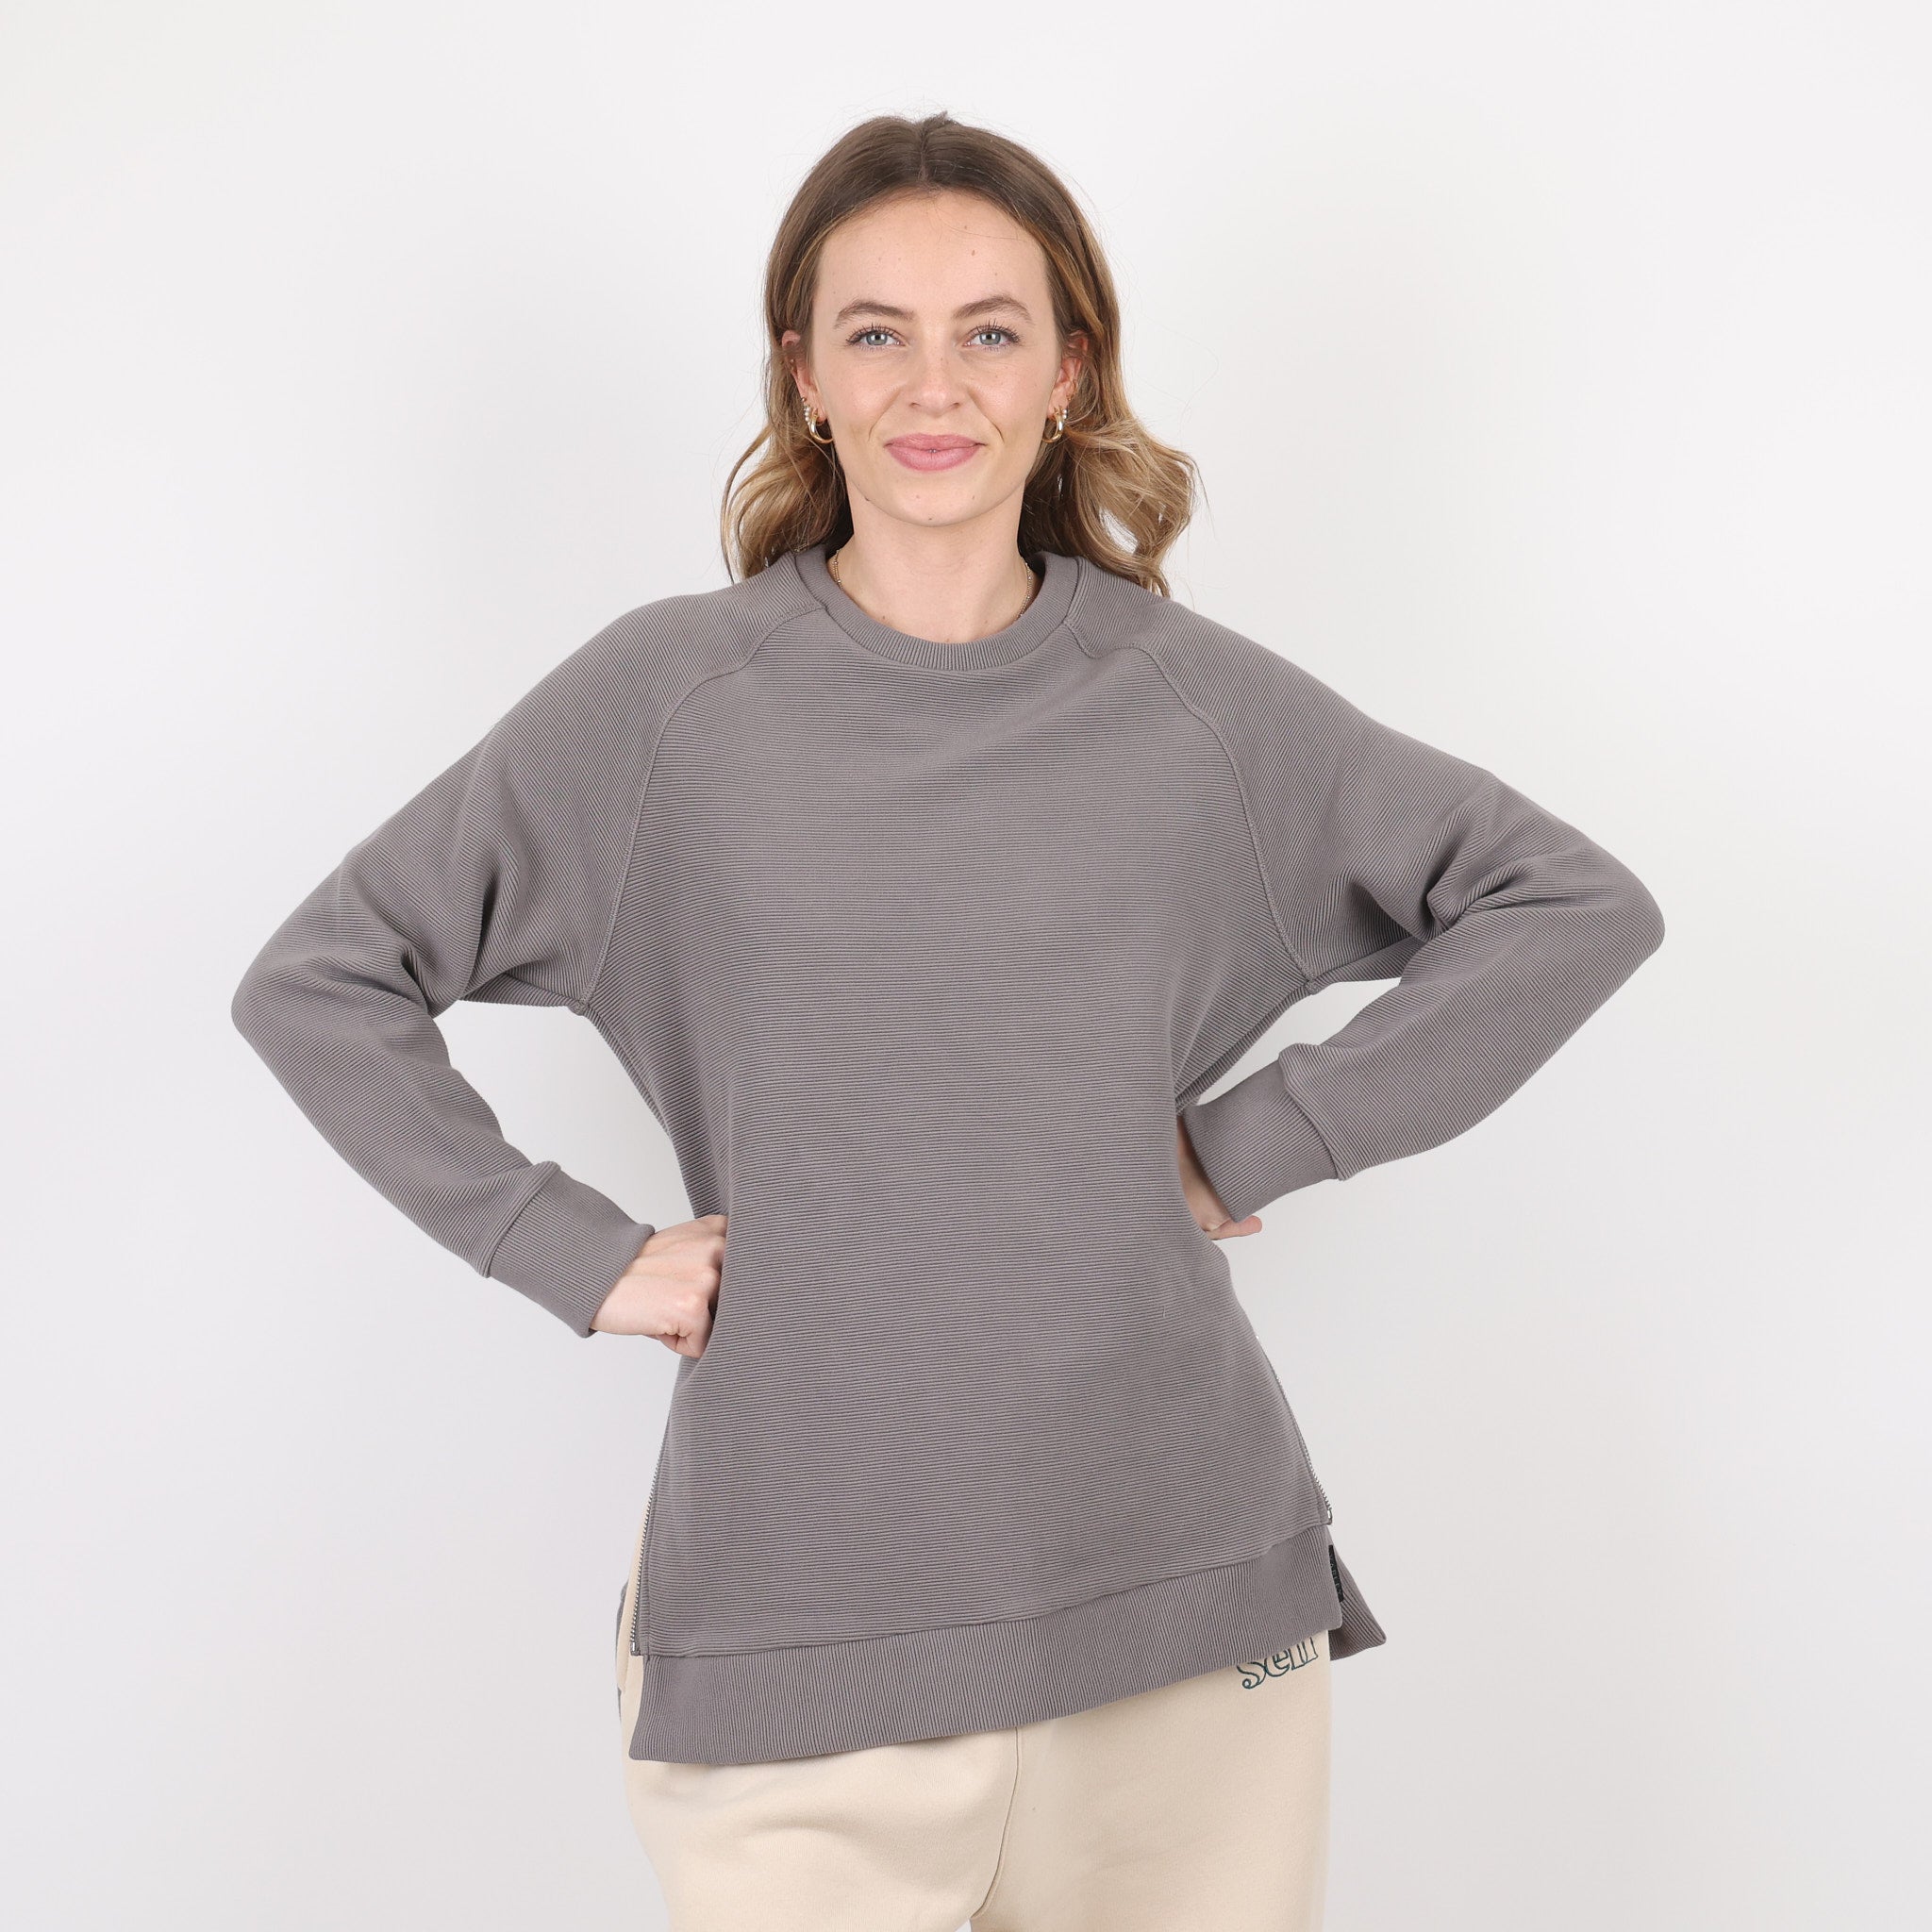 Sweatshirt, UK Size 14